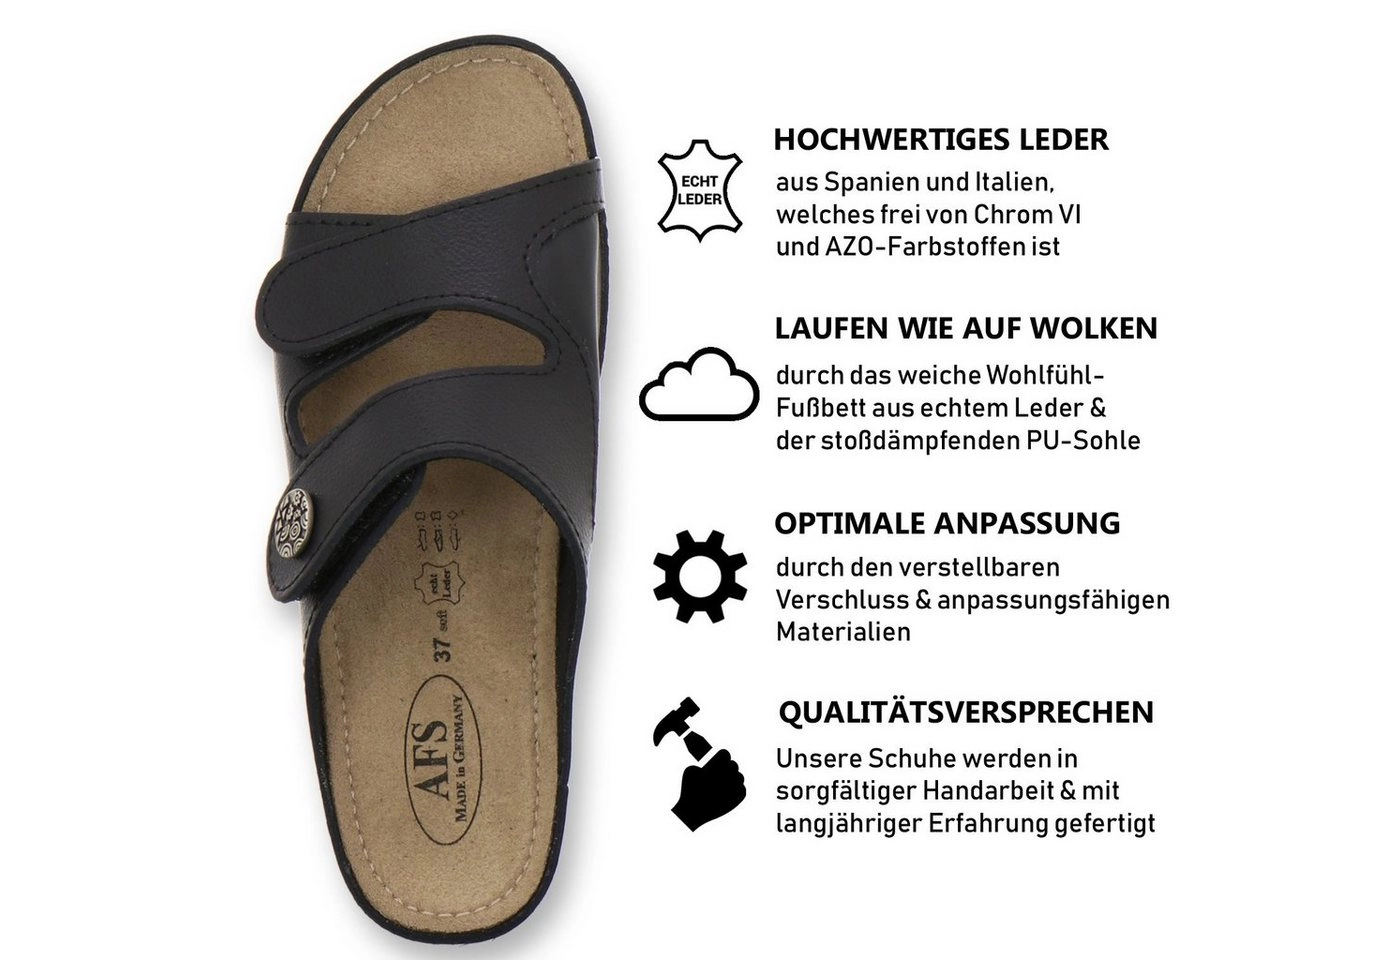 AFS-Schuhe »2095H« Keilpantolette für Damen aus Leder - Hallux Valgus, Made in Germany